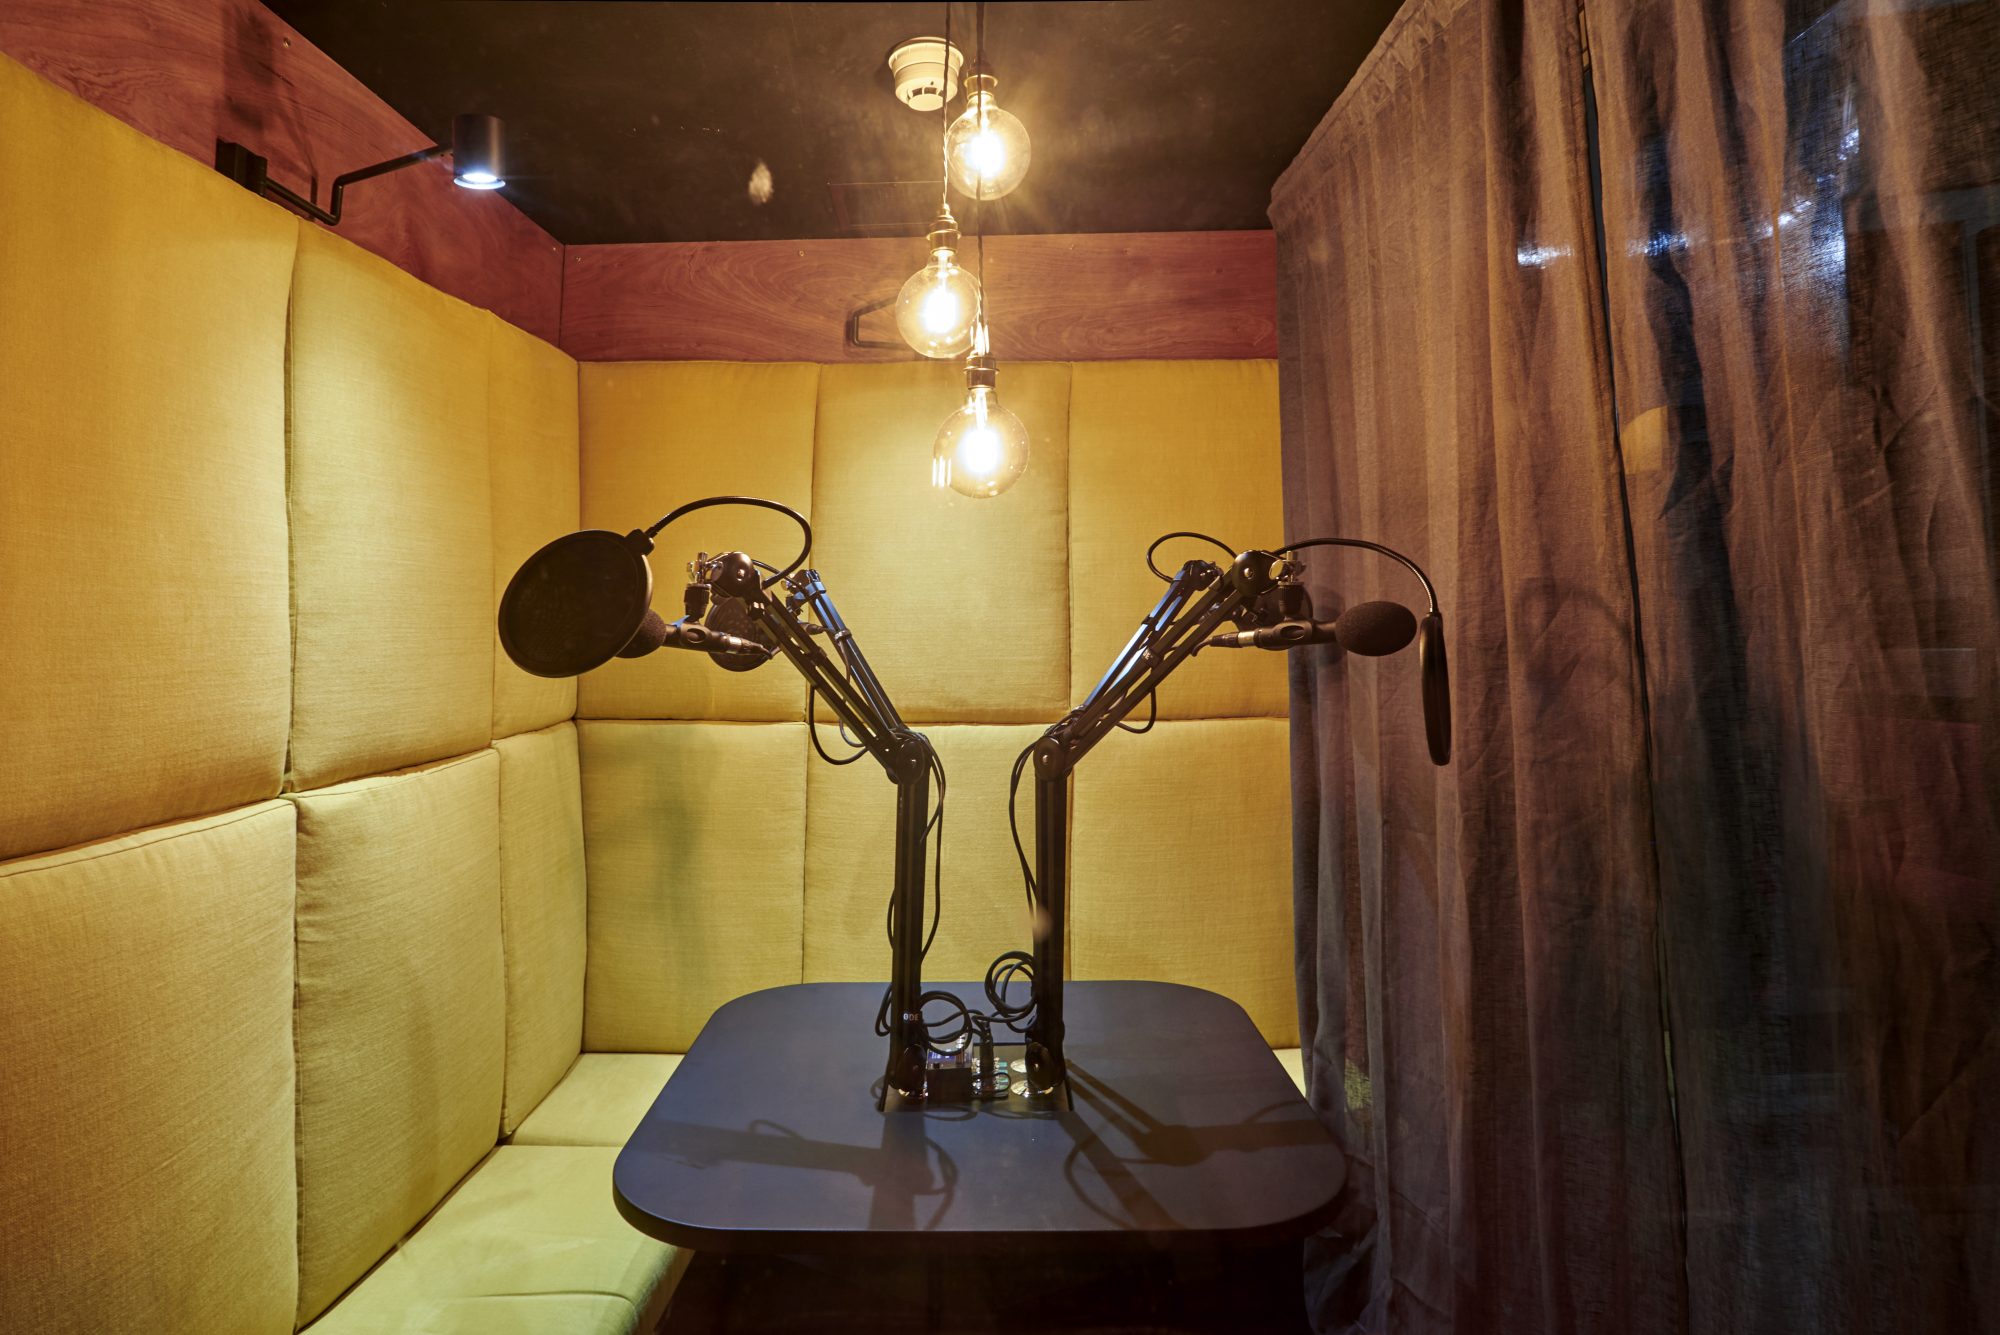 soho-radio-studios_podcast-recording-studio-02-microphones-yellow-seats